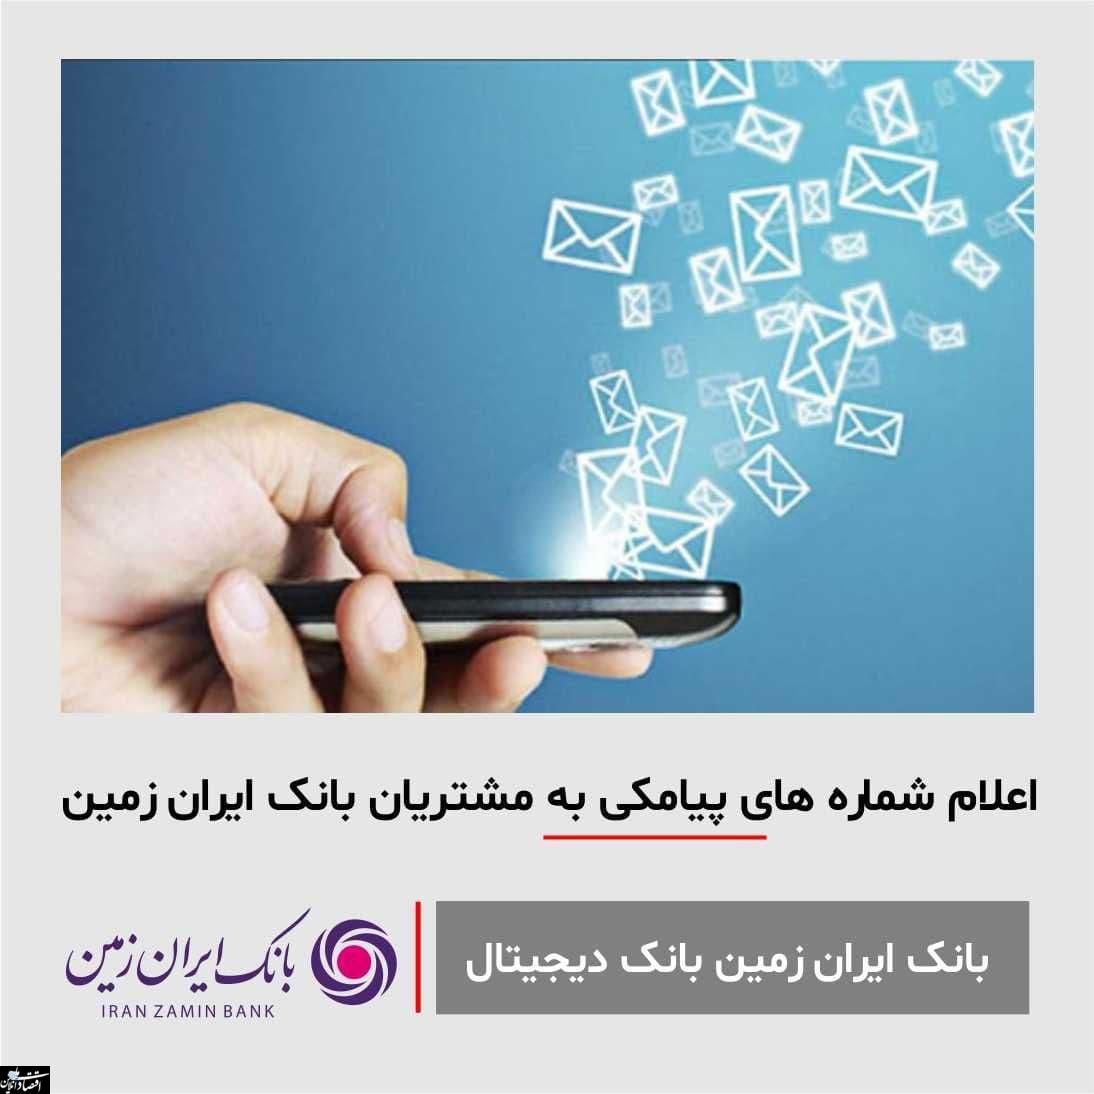 اعلام شماره های پیامکی بانک ایران زمین